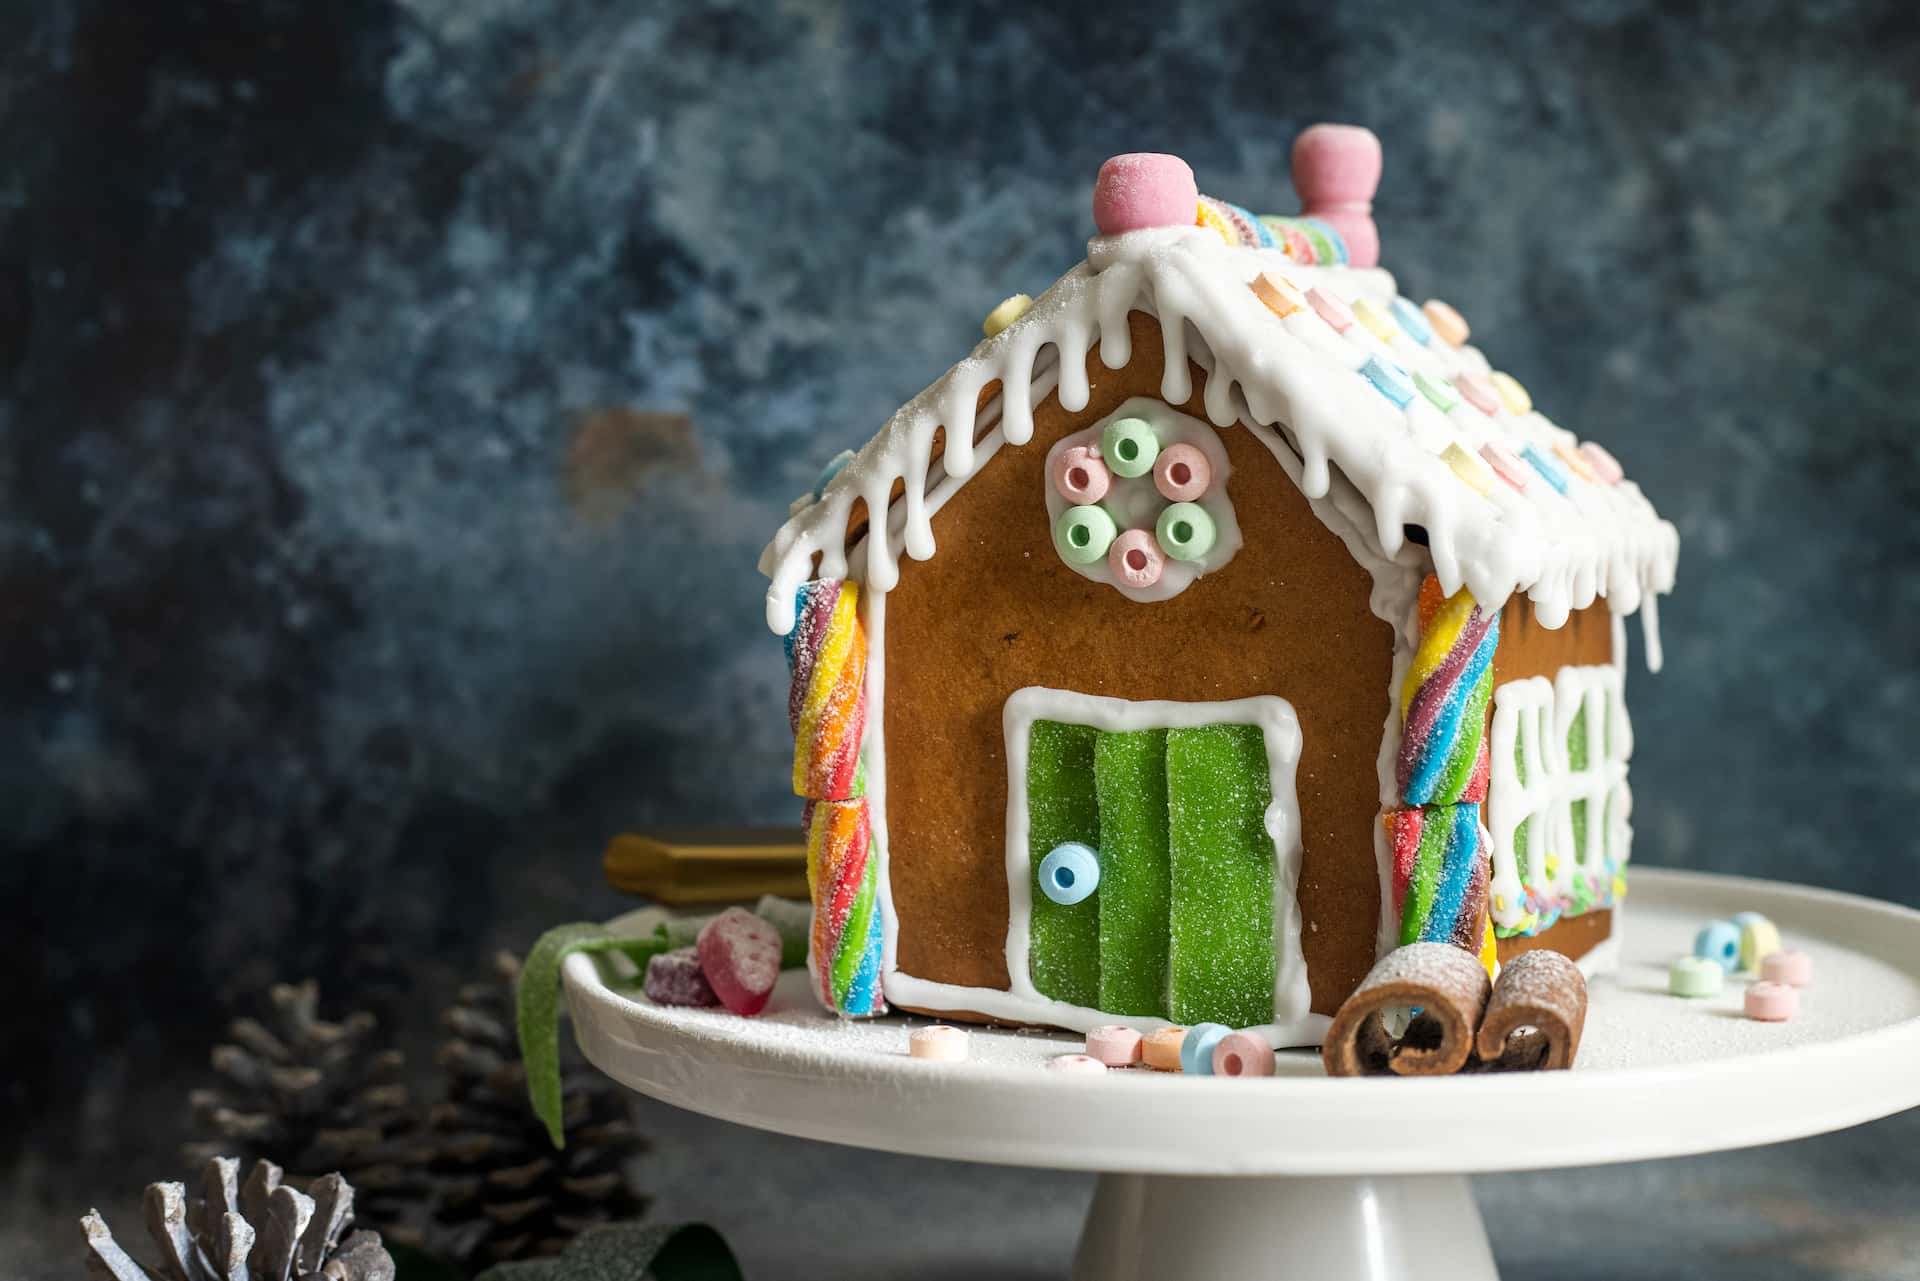 Treehouse Bakery sells baking kits for vegan gingerbread houses